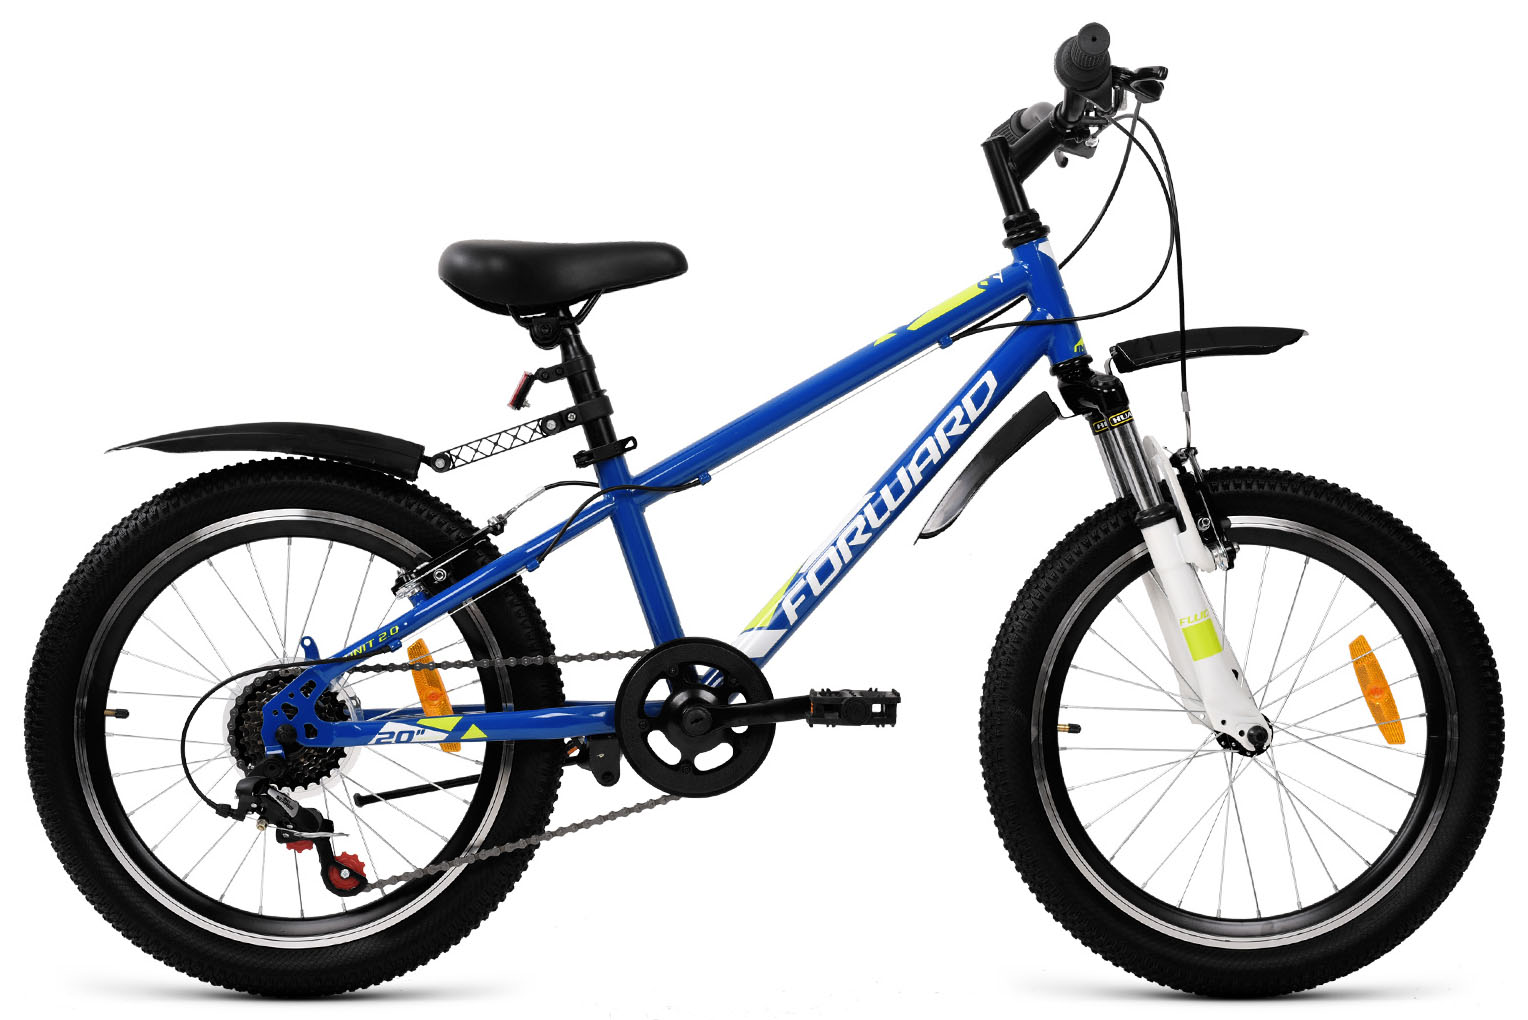  Отзывы о Детском велосипеде Forward Unit 20 2.0 2019